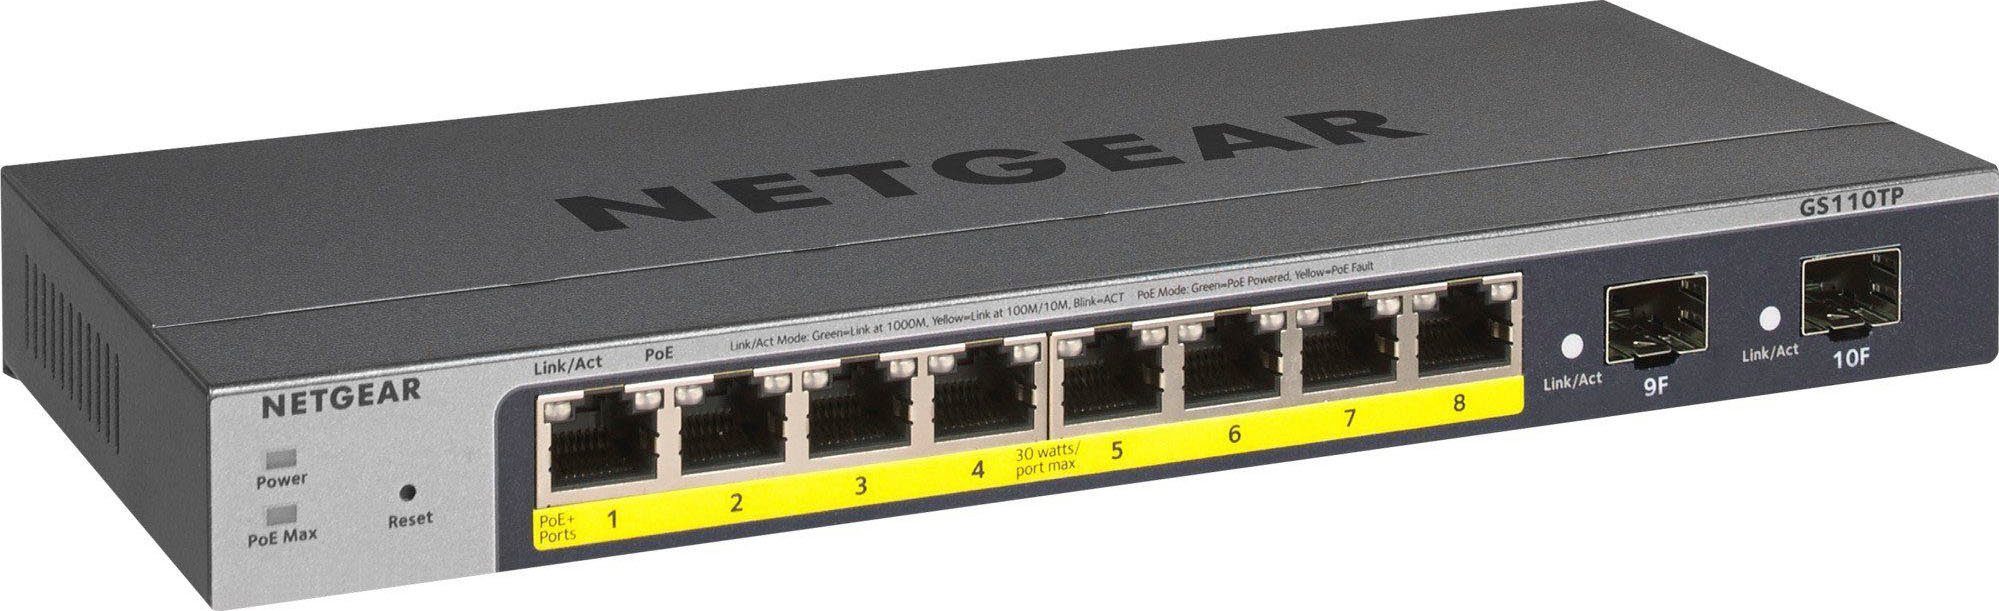 NETGEAR GS110TP v3 Netzwerk-Switch | Router